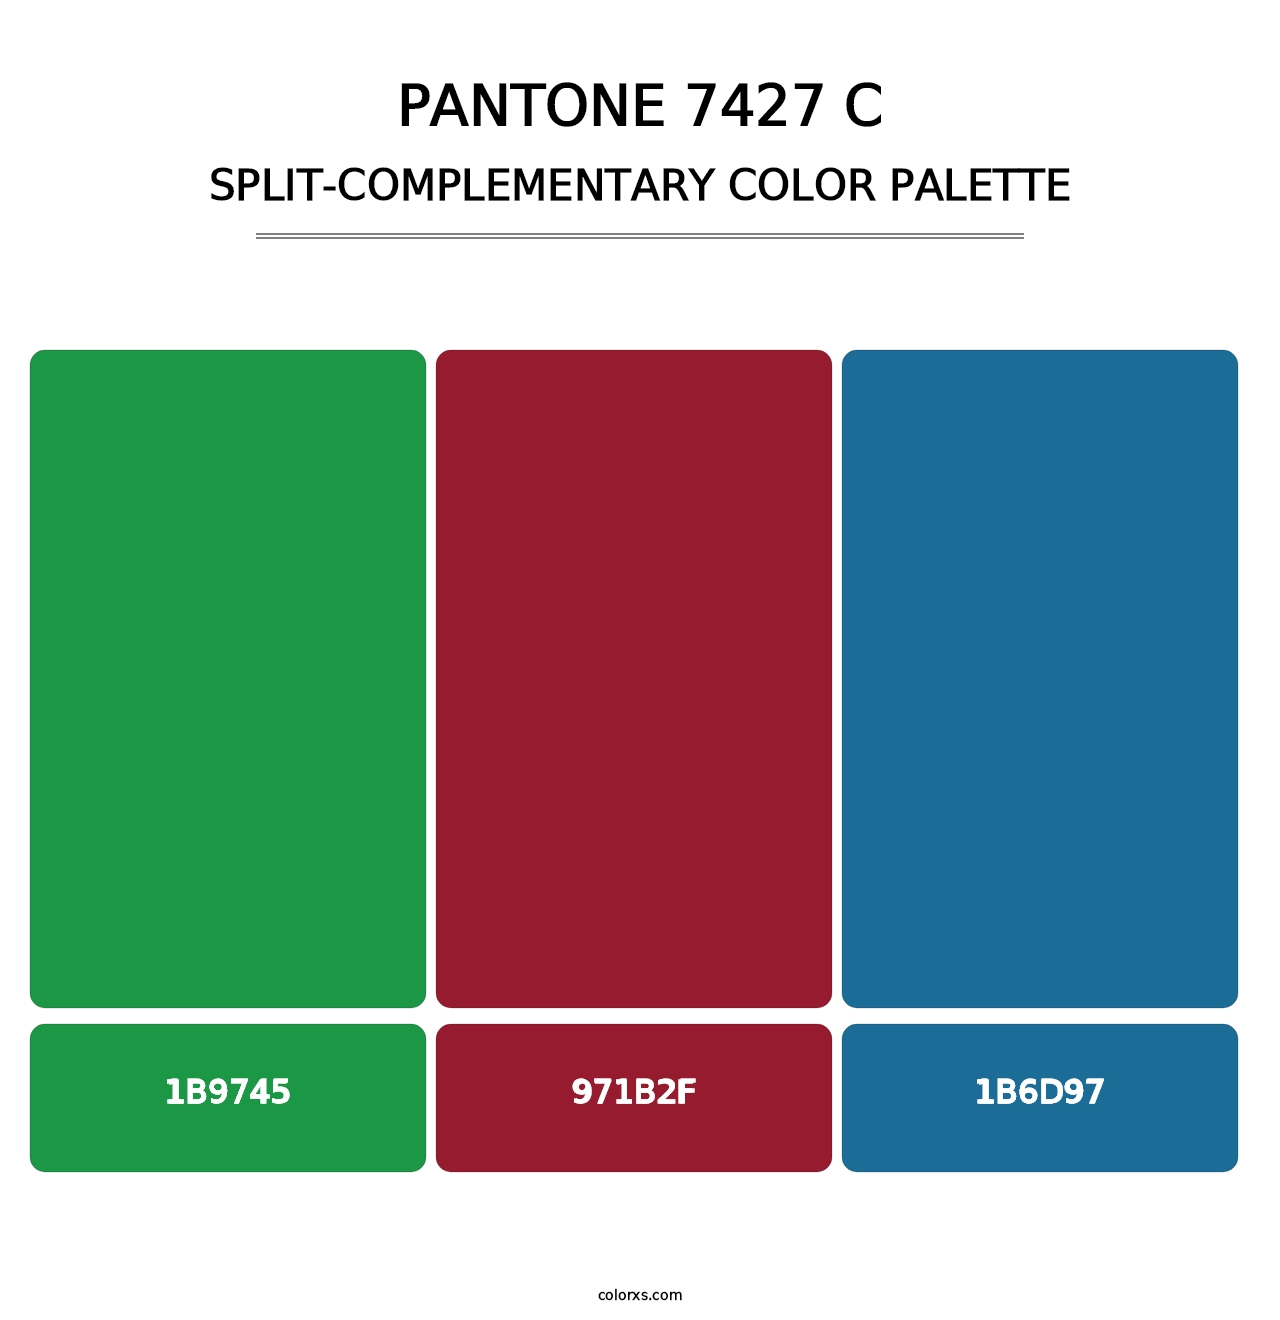 PANTONE 7427 C - Split-Complementary Color Palette